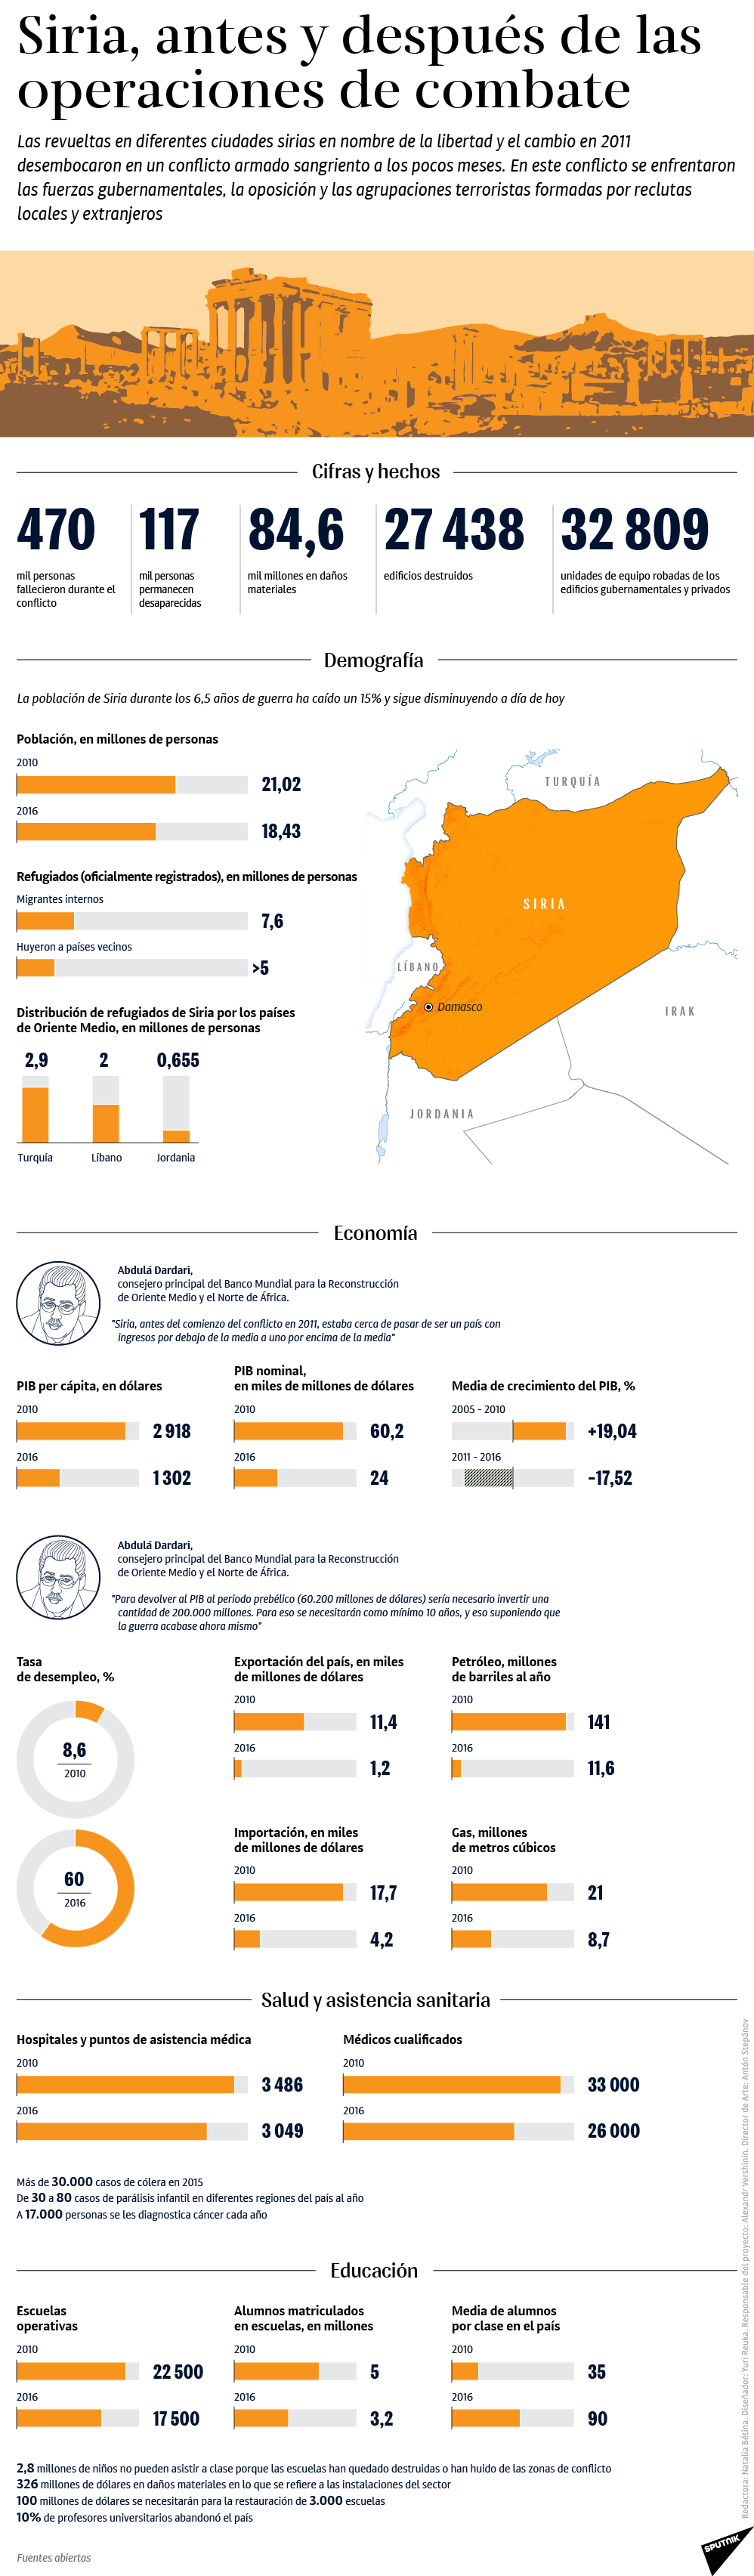 Siria, antes y después de la operaciones de combate - Sputnik Mundo